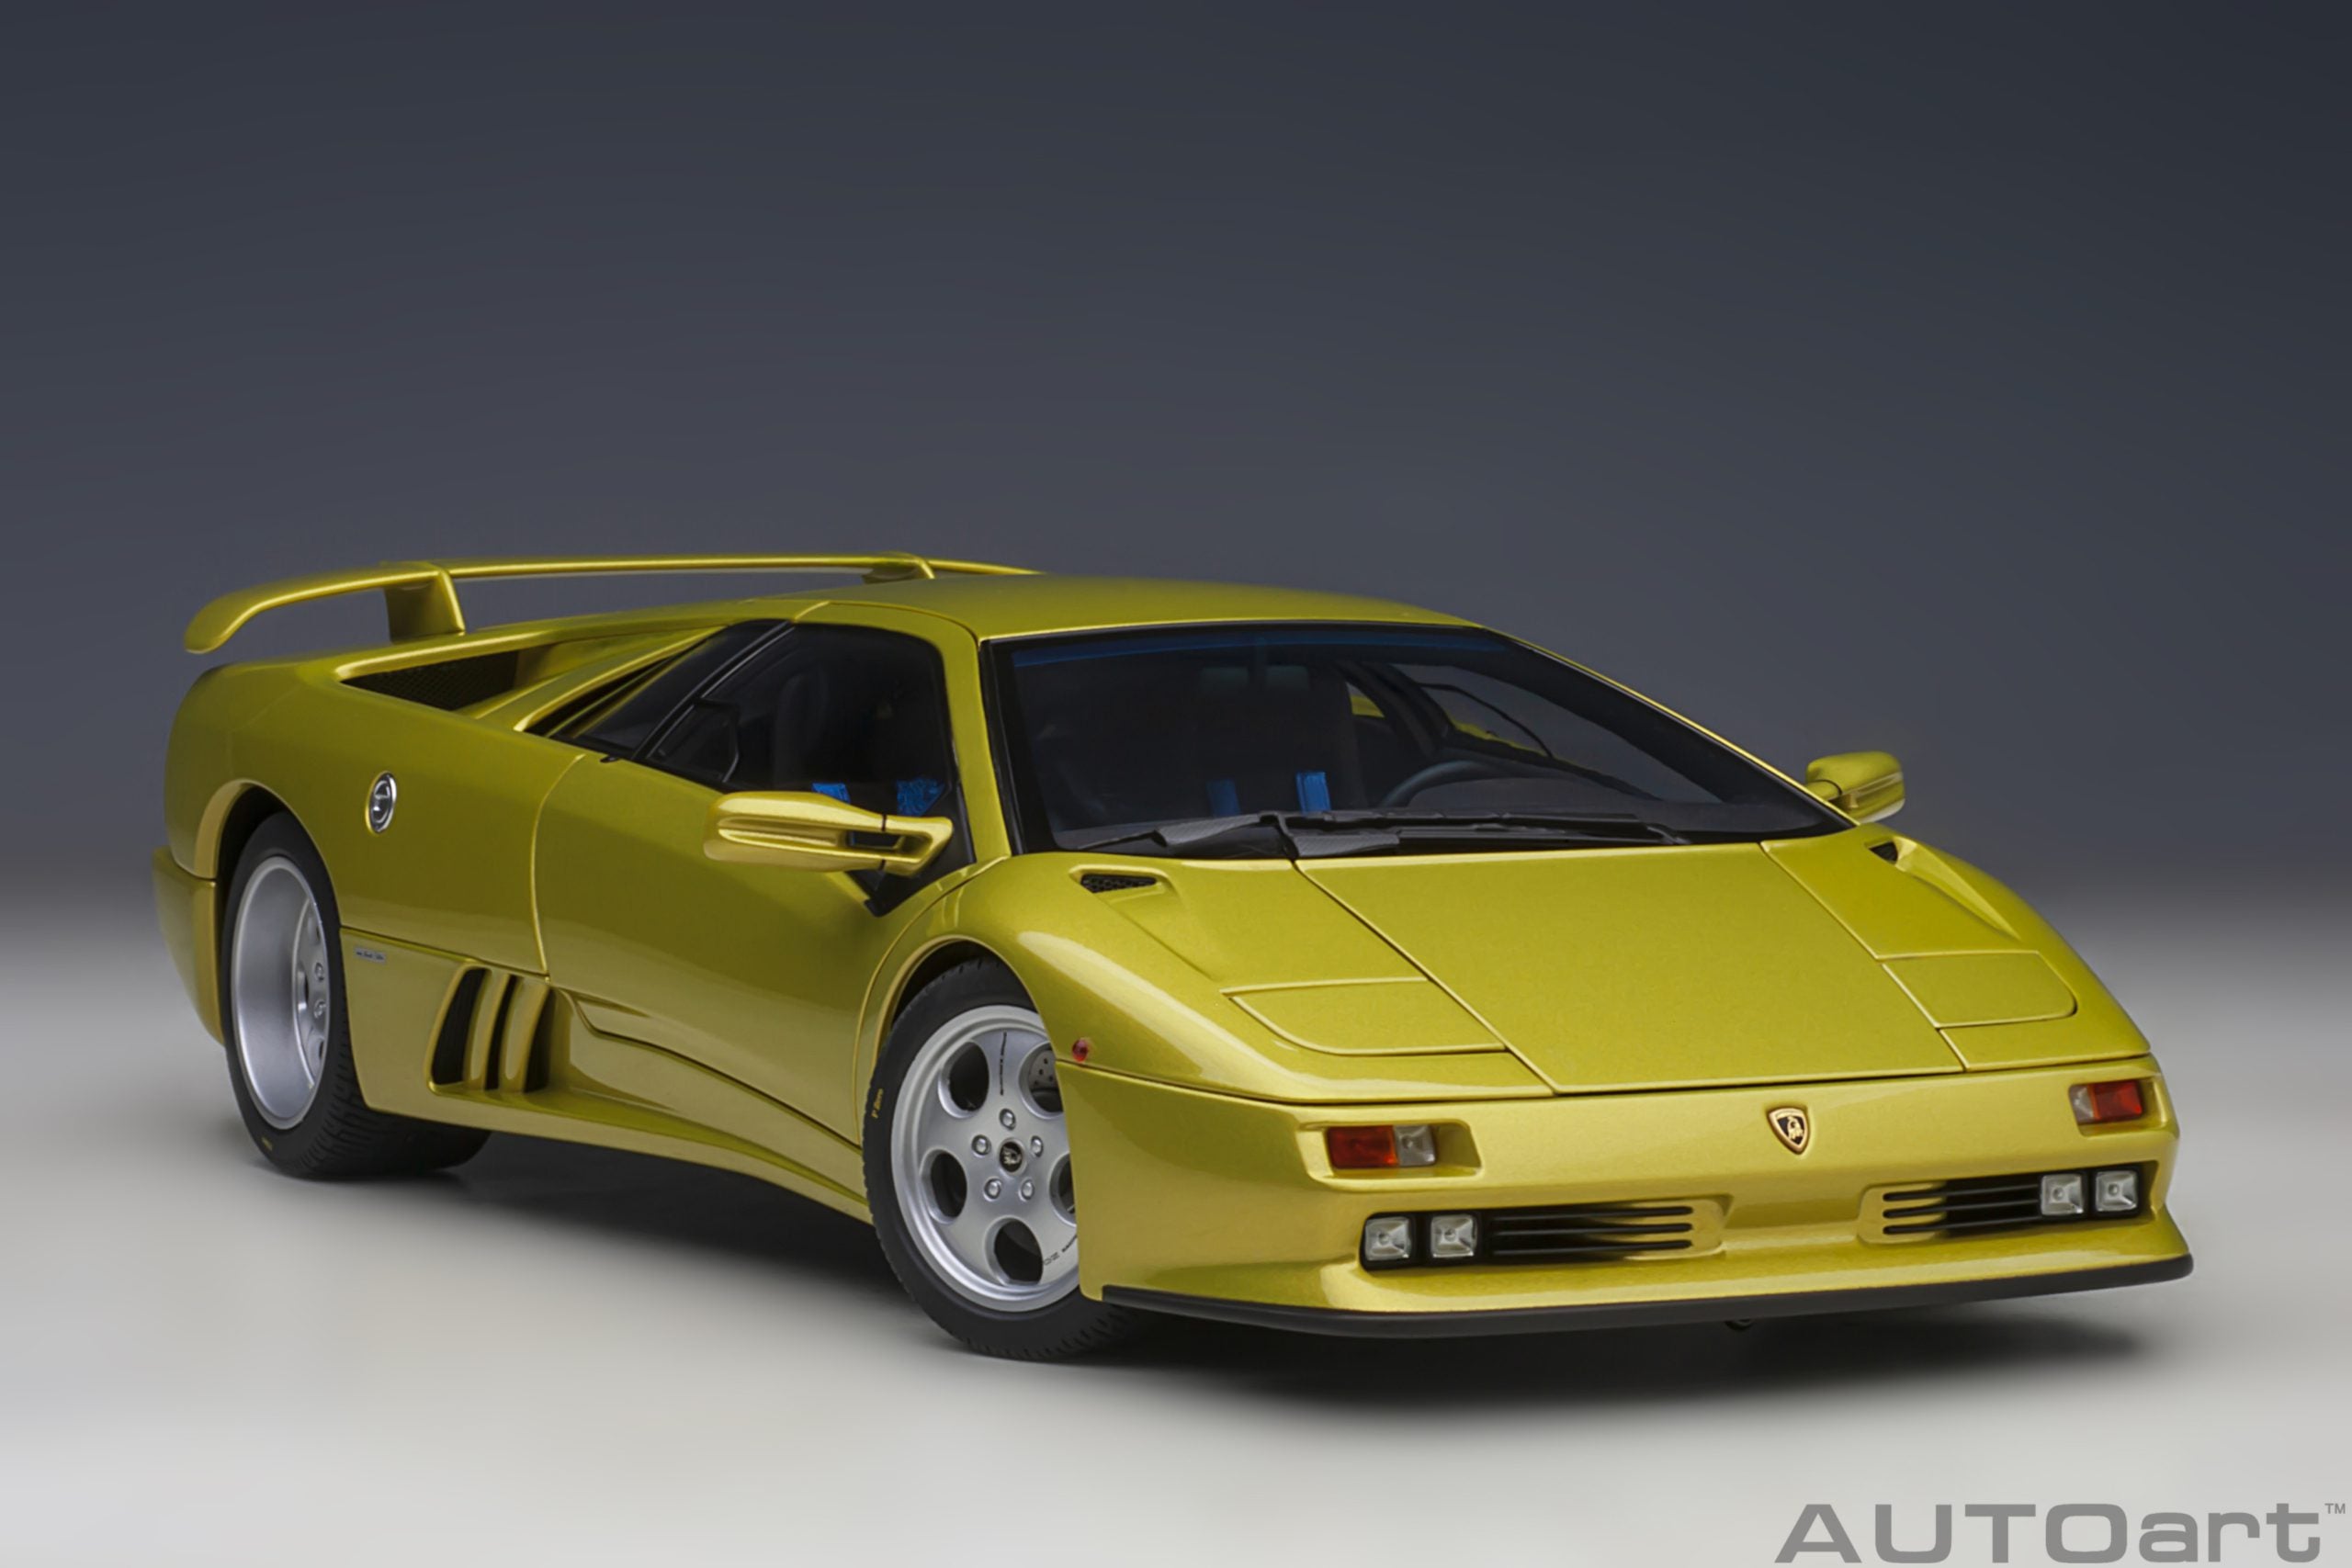 AUTOart 1:18 Lamborghini Diablo SE 30th Anniversary Edition